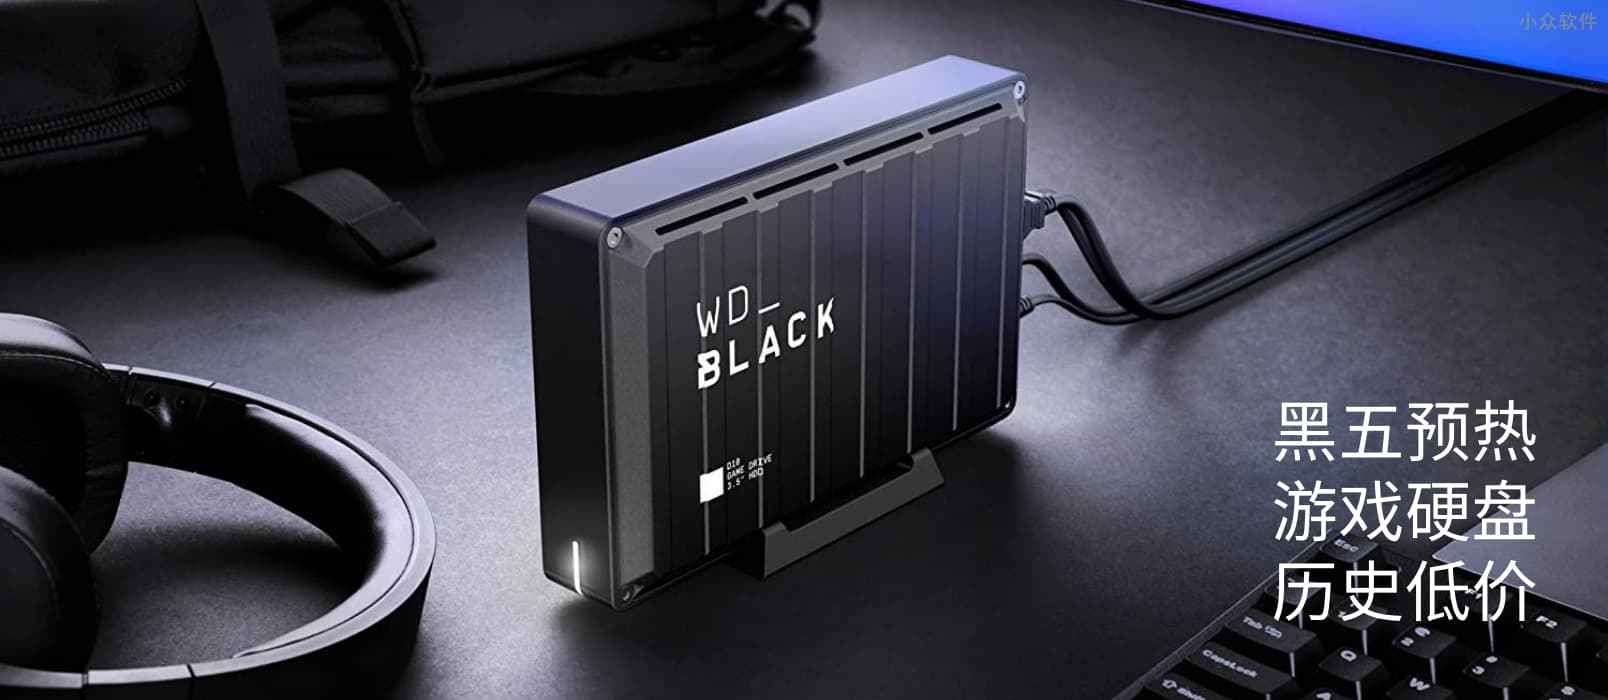 亚马逊黑五预热：WD_BLACK D10 8TB 游戏硬盘历史低价